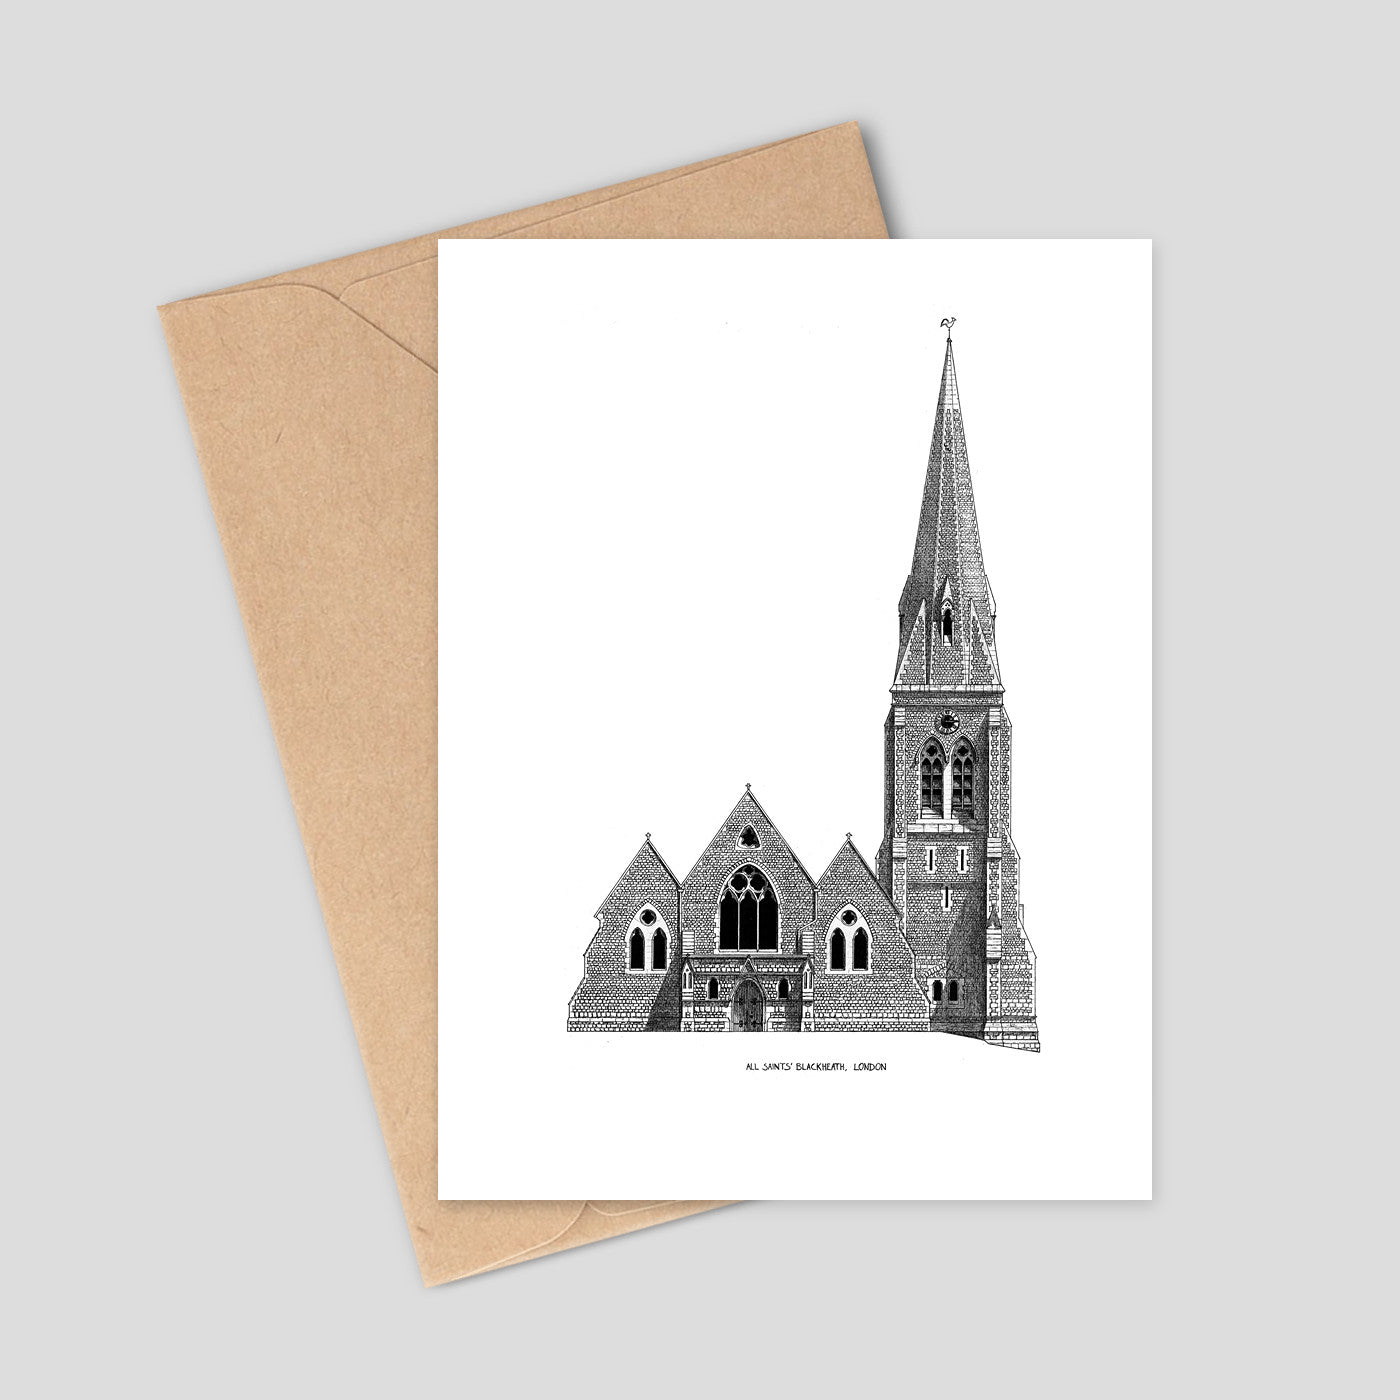 All Saints Church, Blackheath- Greetings Card